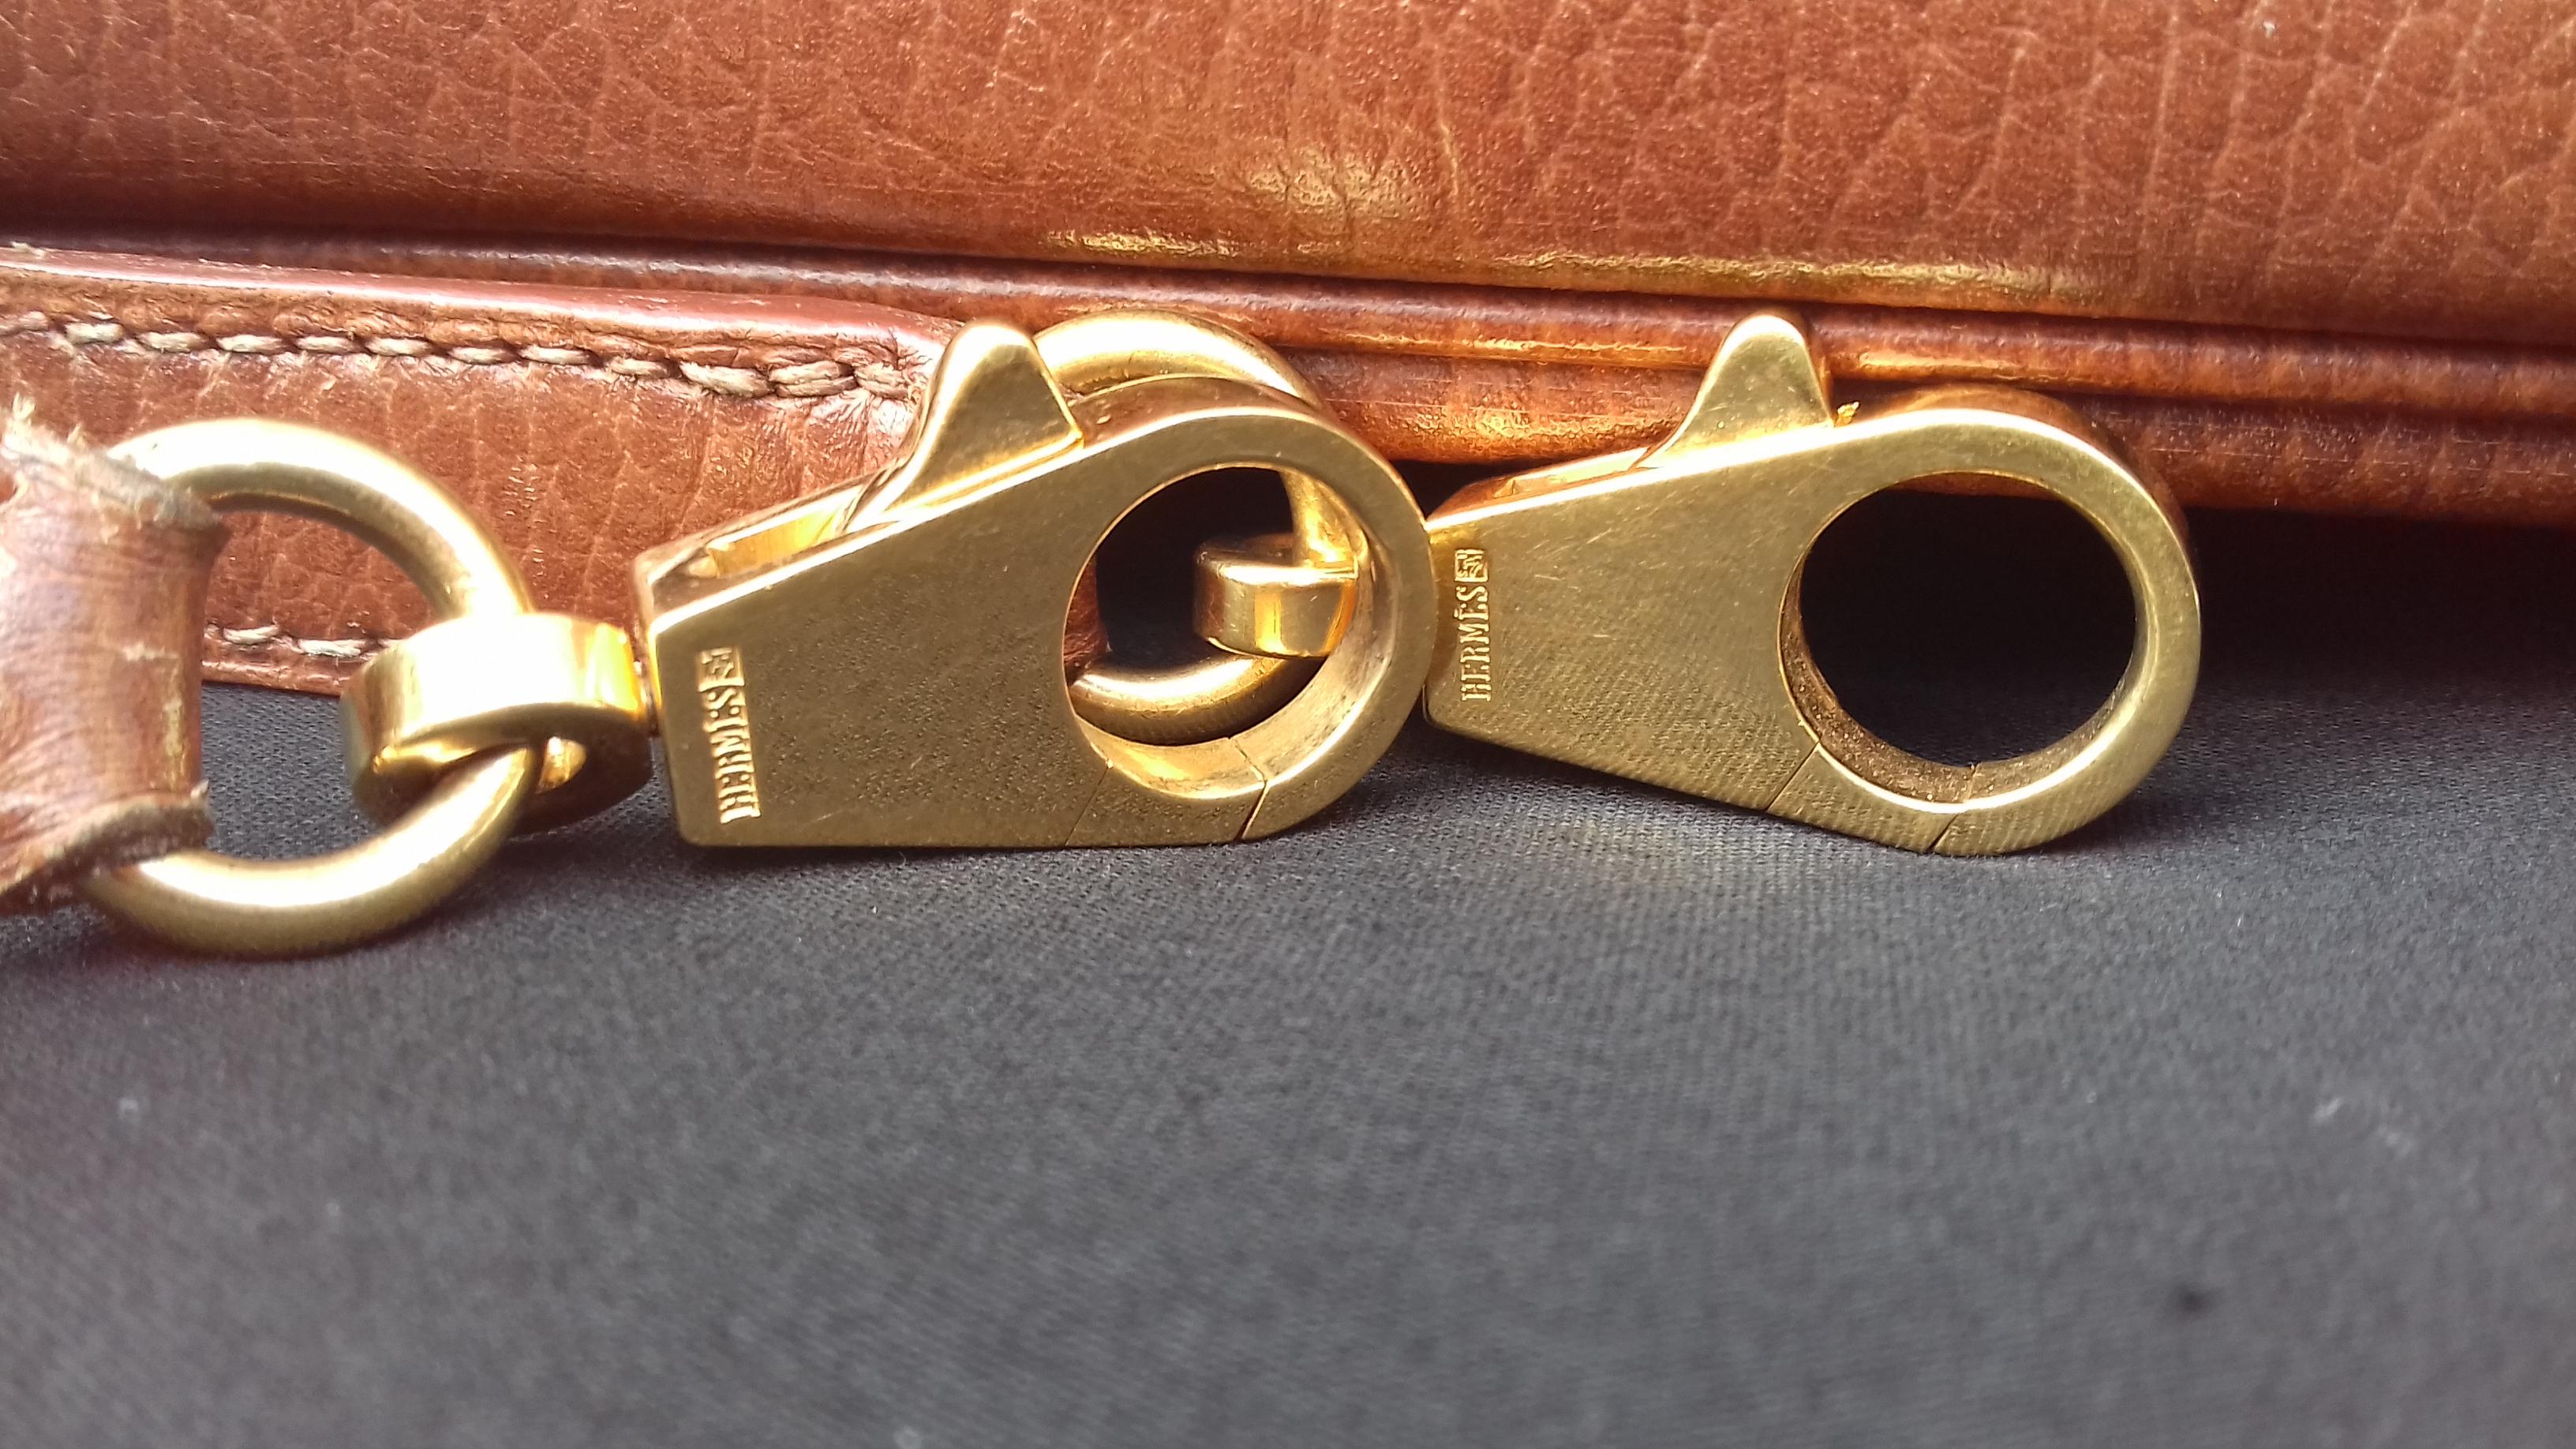 Hermès Vintage Bolide Tasche 2 Wege Braun Leder Golden Hdw 33 cm 9